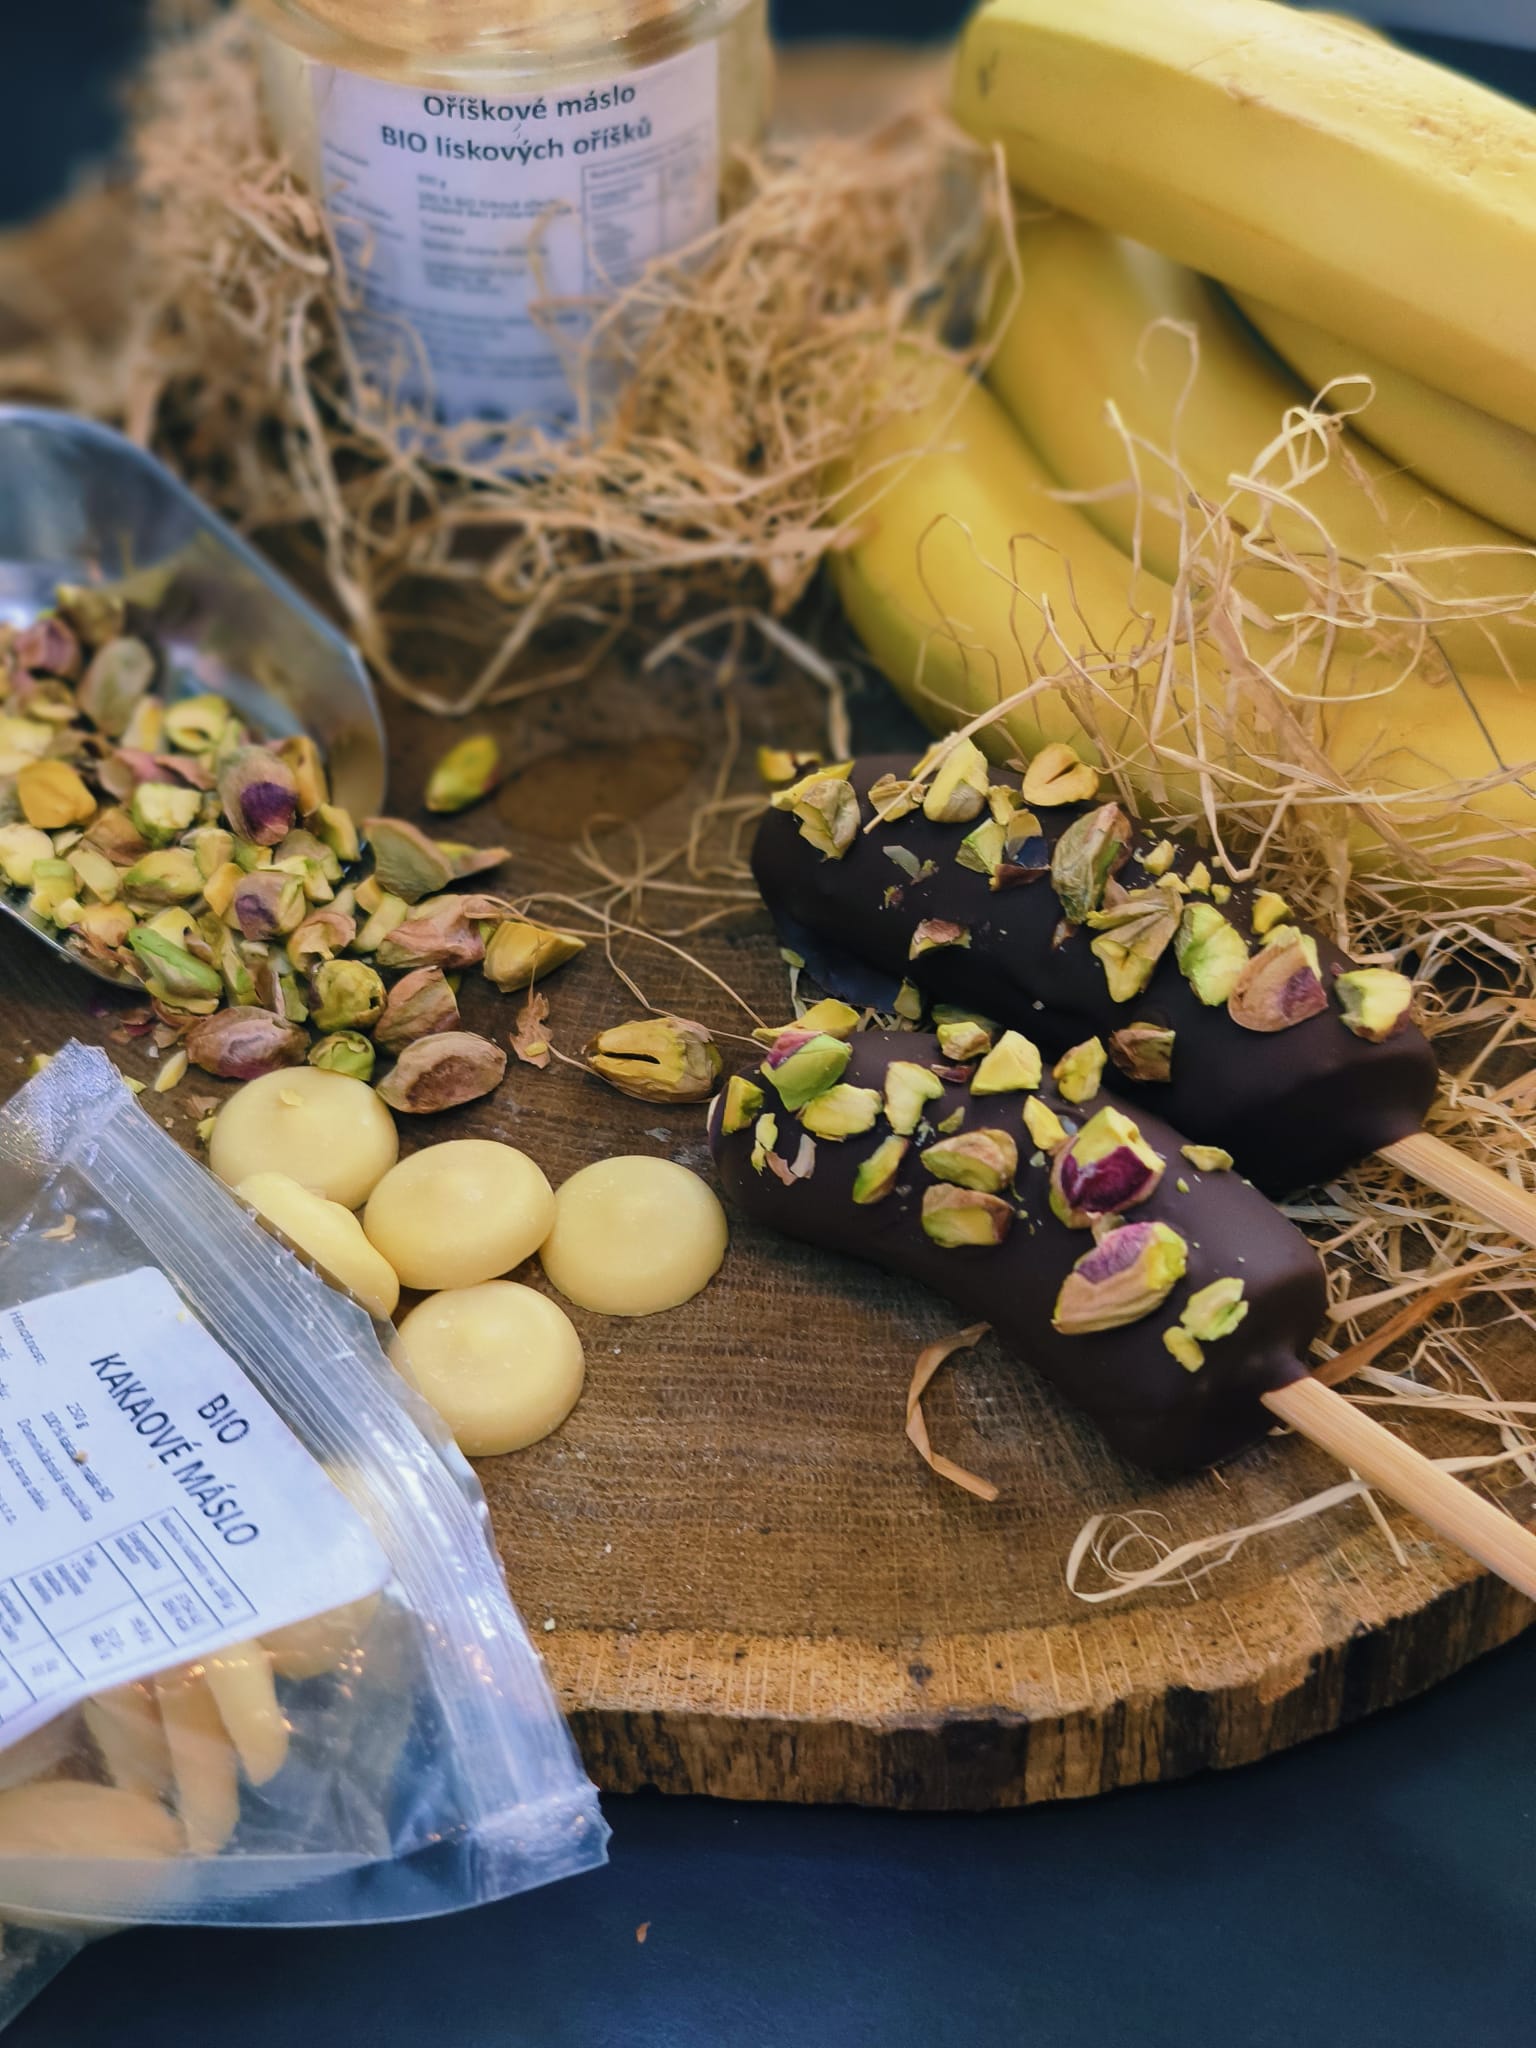 Banánová lízátka s ořechovým máslem a čokoládou